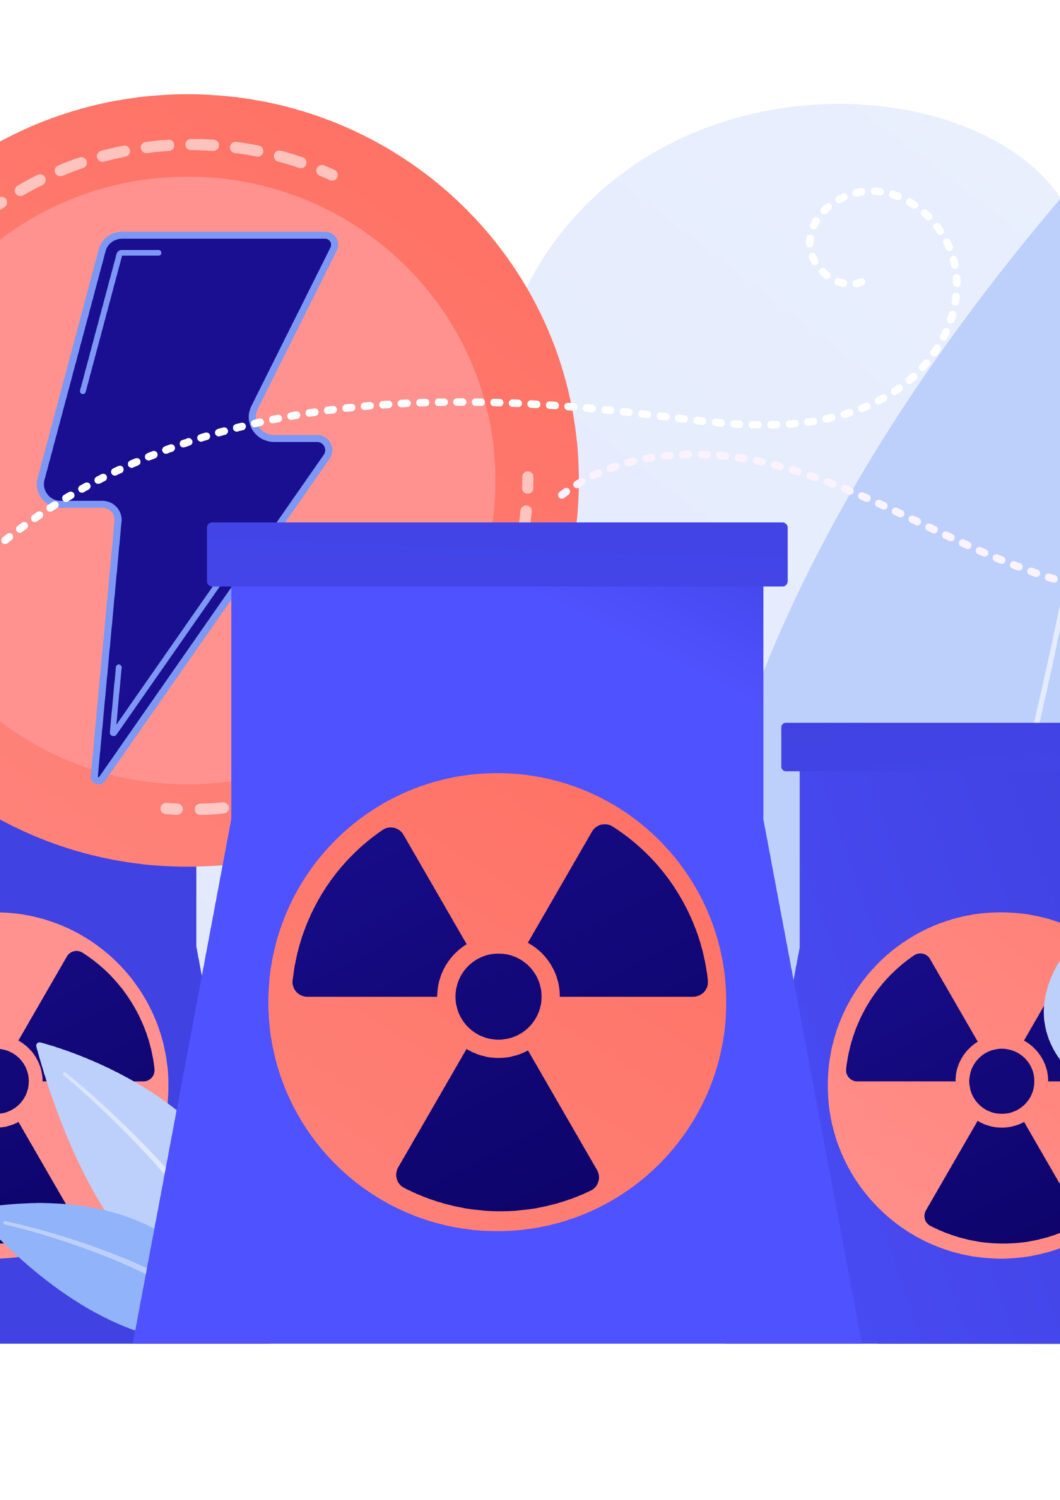 Atomkraft og implementering